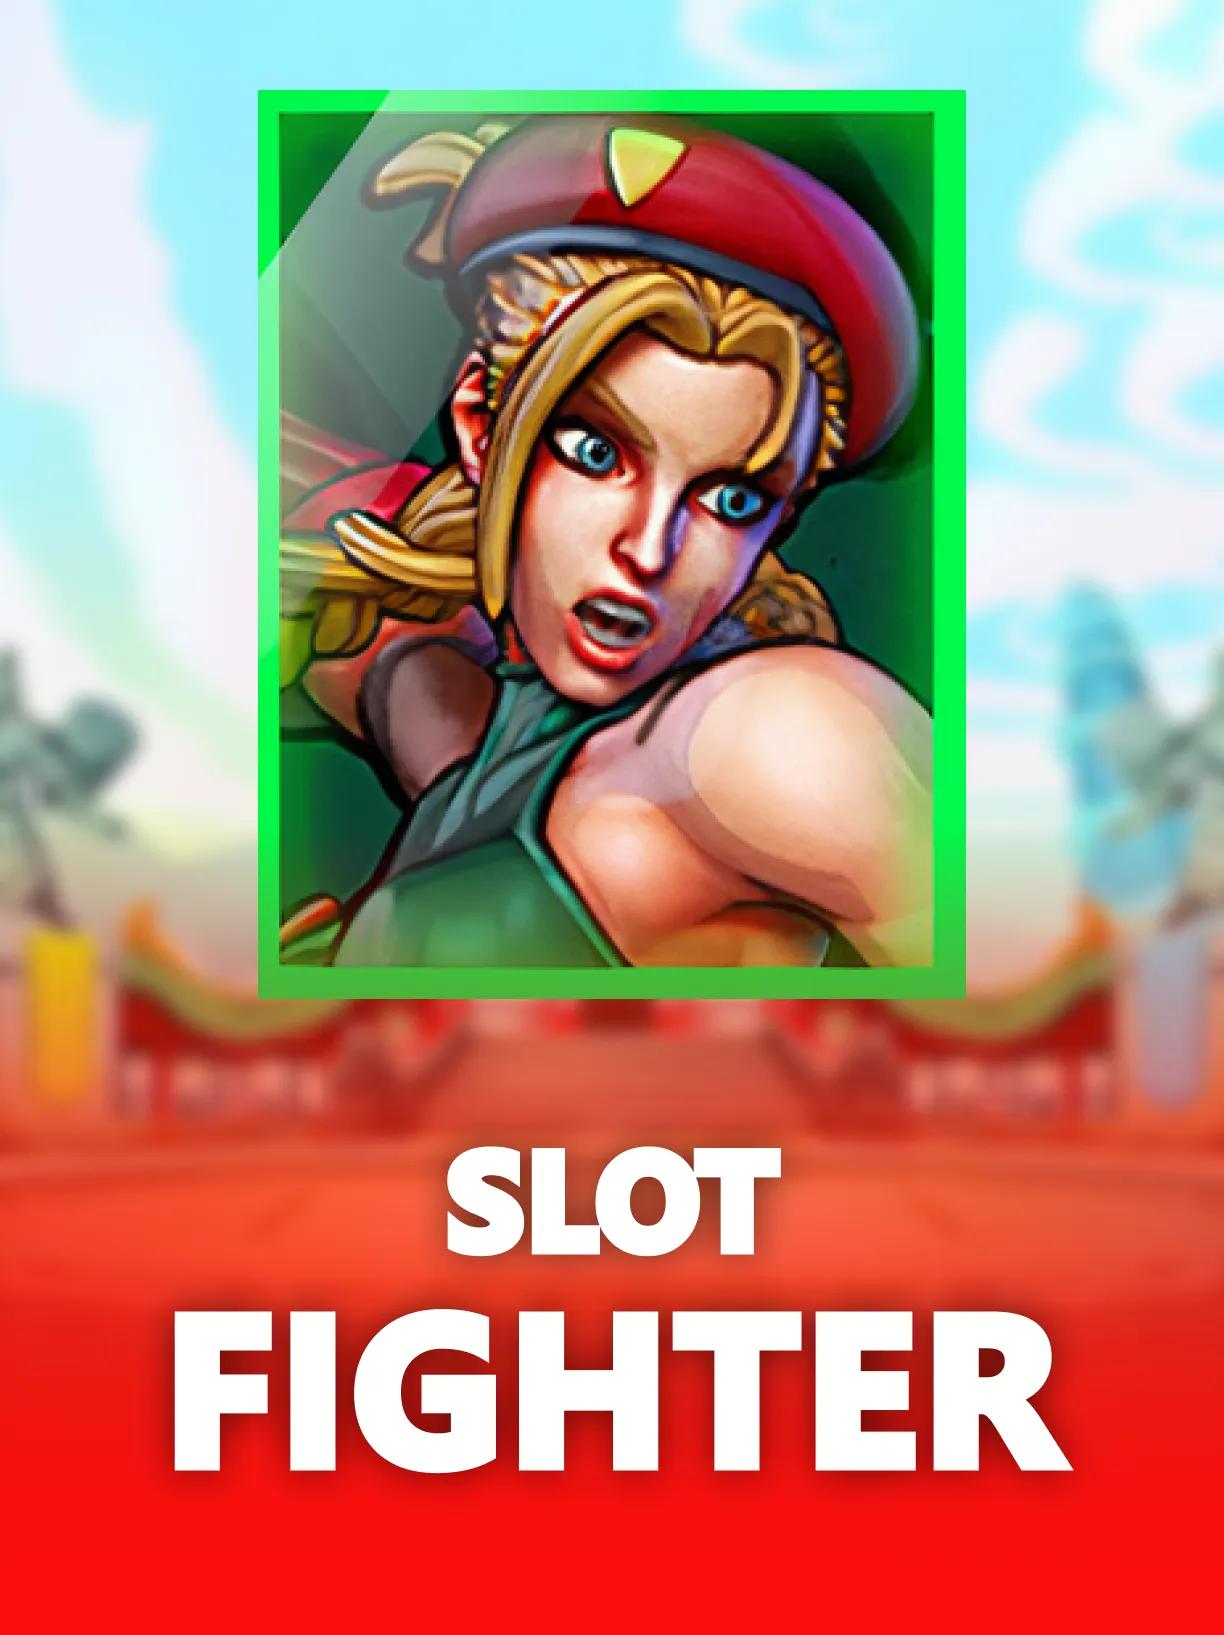 ug_Slot_Fighter_square.webp